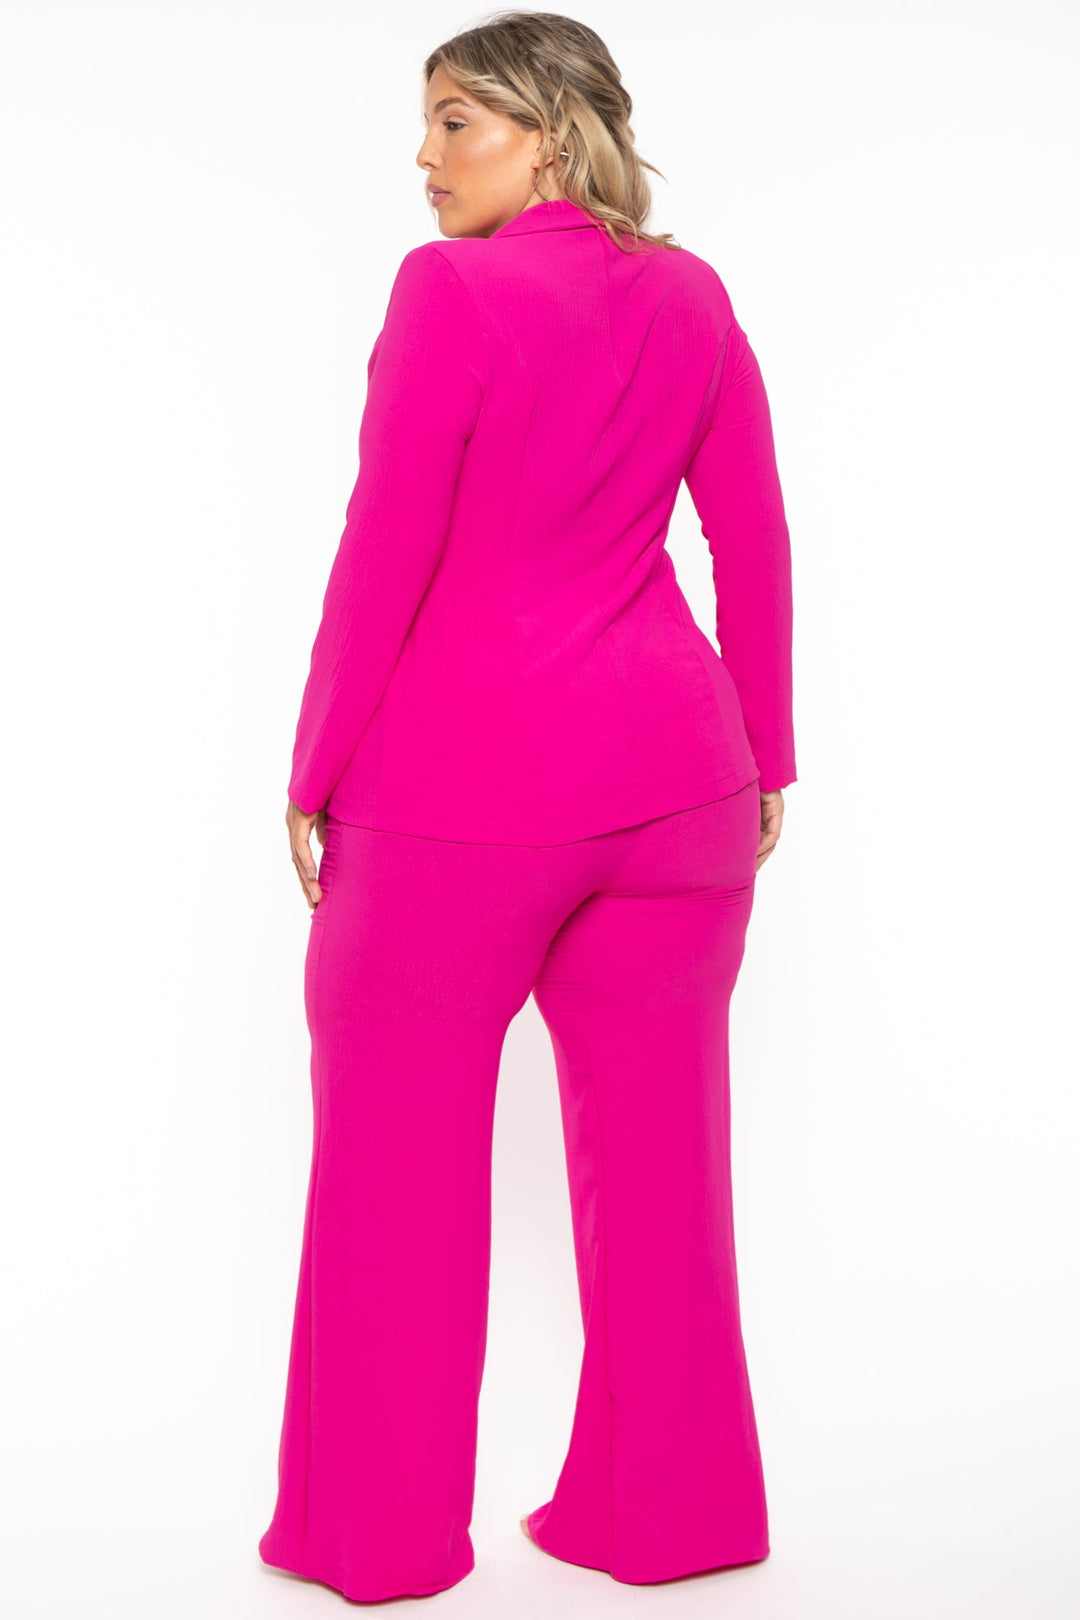 Gibiu Matching Sets Plus Size HBIC Pant Suit - Fuchsia